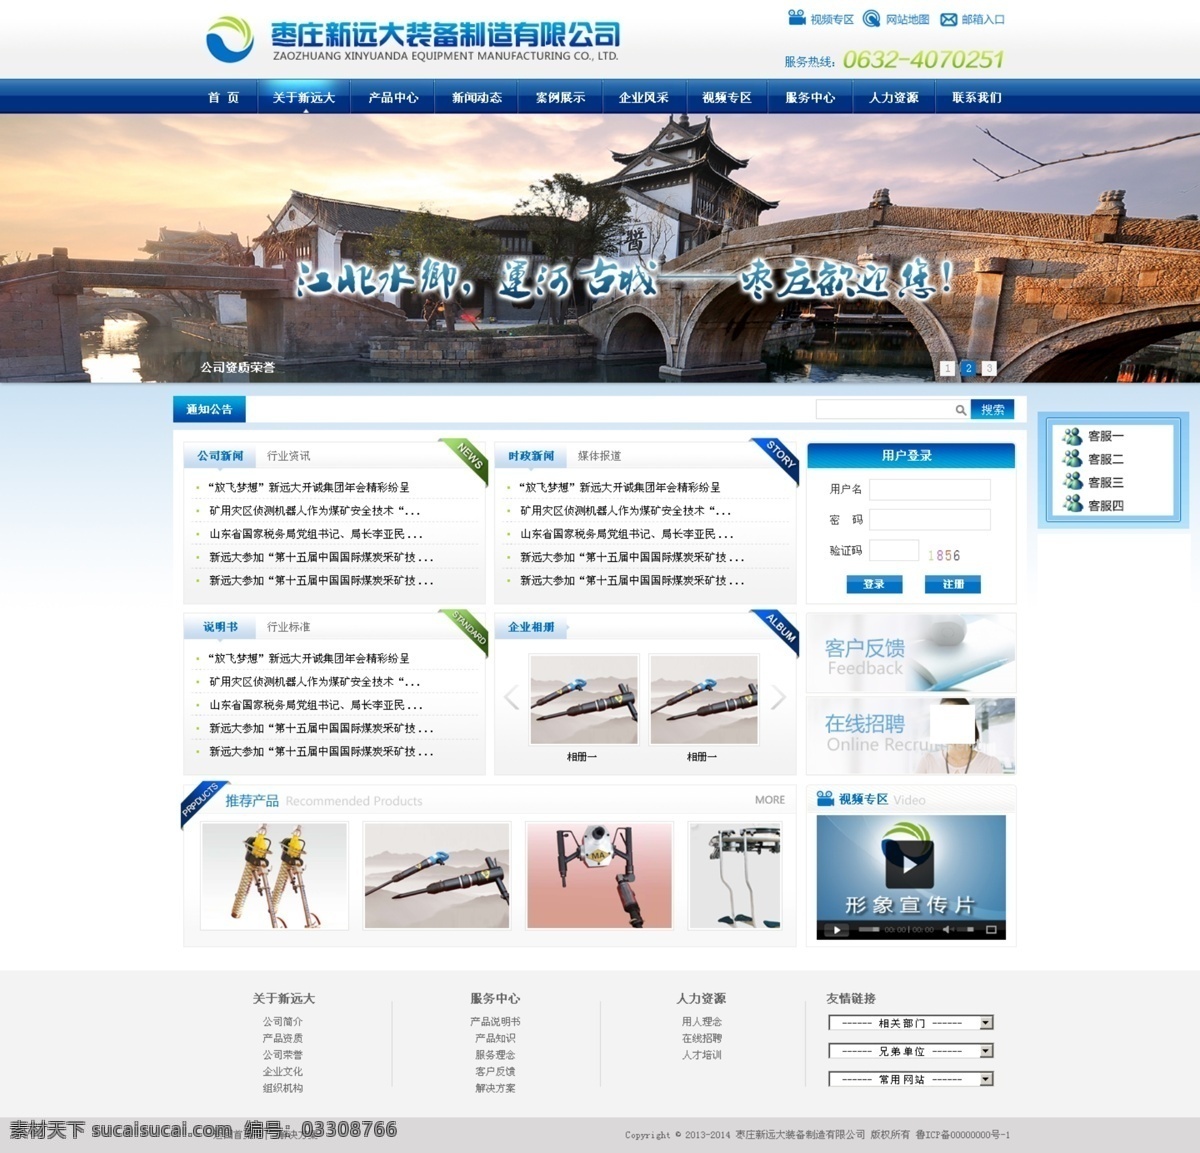 公司网页 网站 页面 网页 web 界面设计 中文模板 企业网站 资讯 白底 宽版 白色